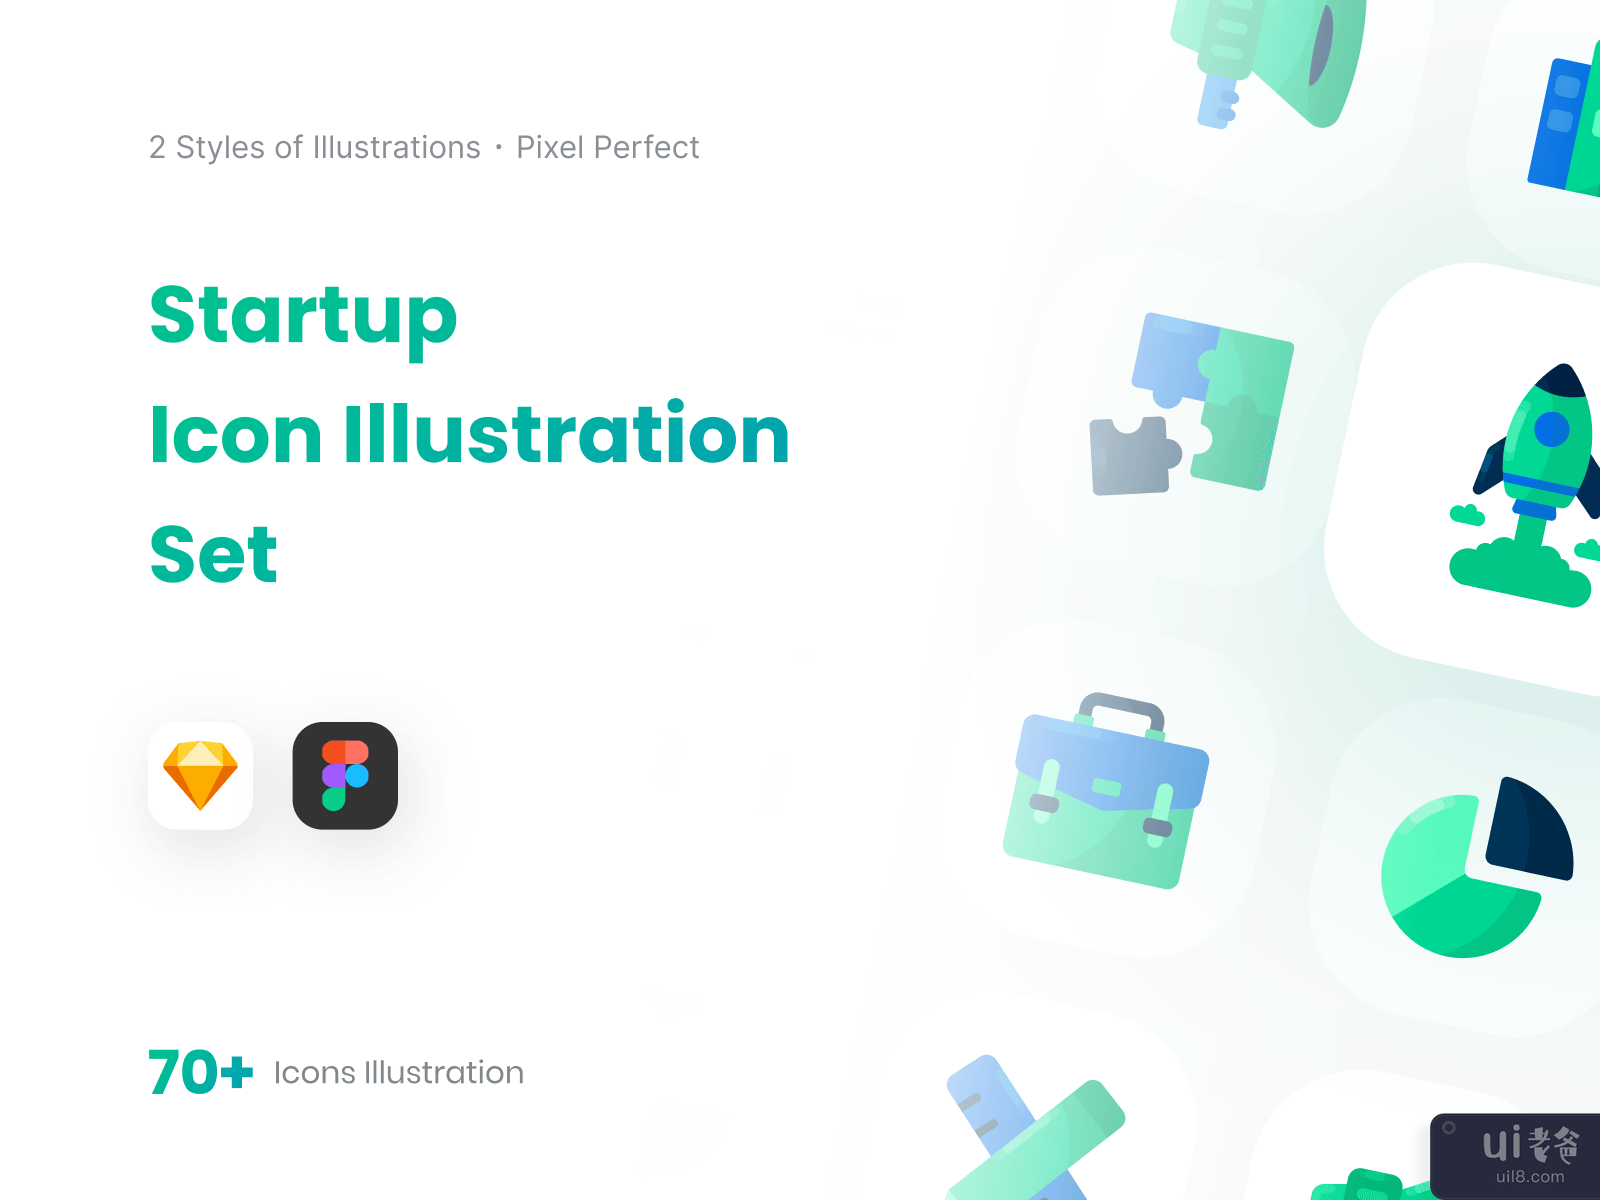 启动图标插图集-颜色样式(Startup Icon Illustration Set - Color Styles)插图